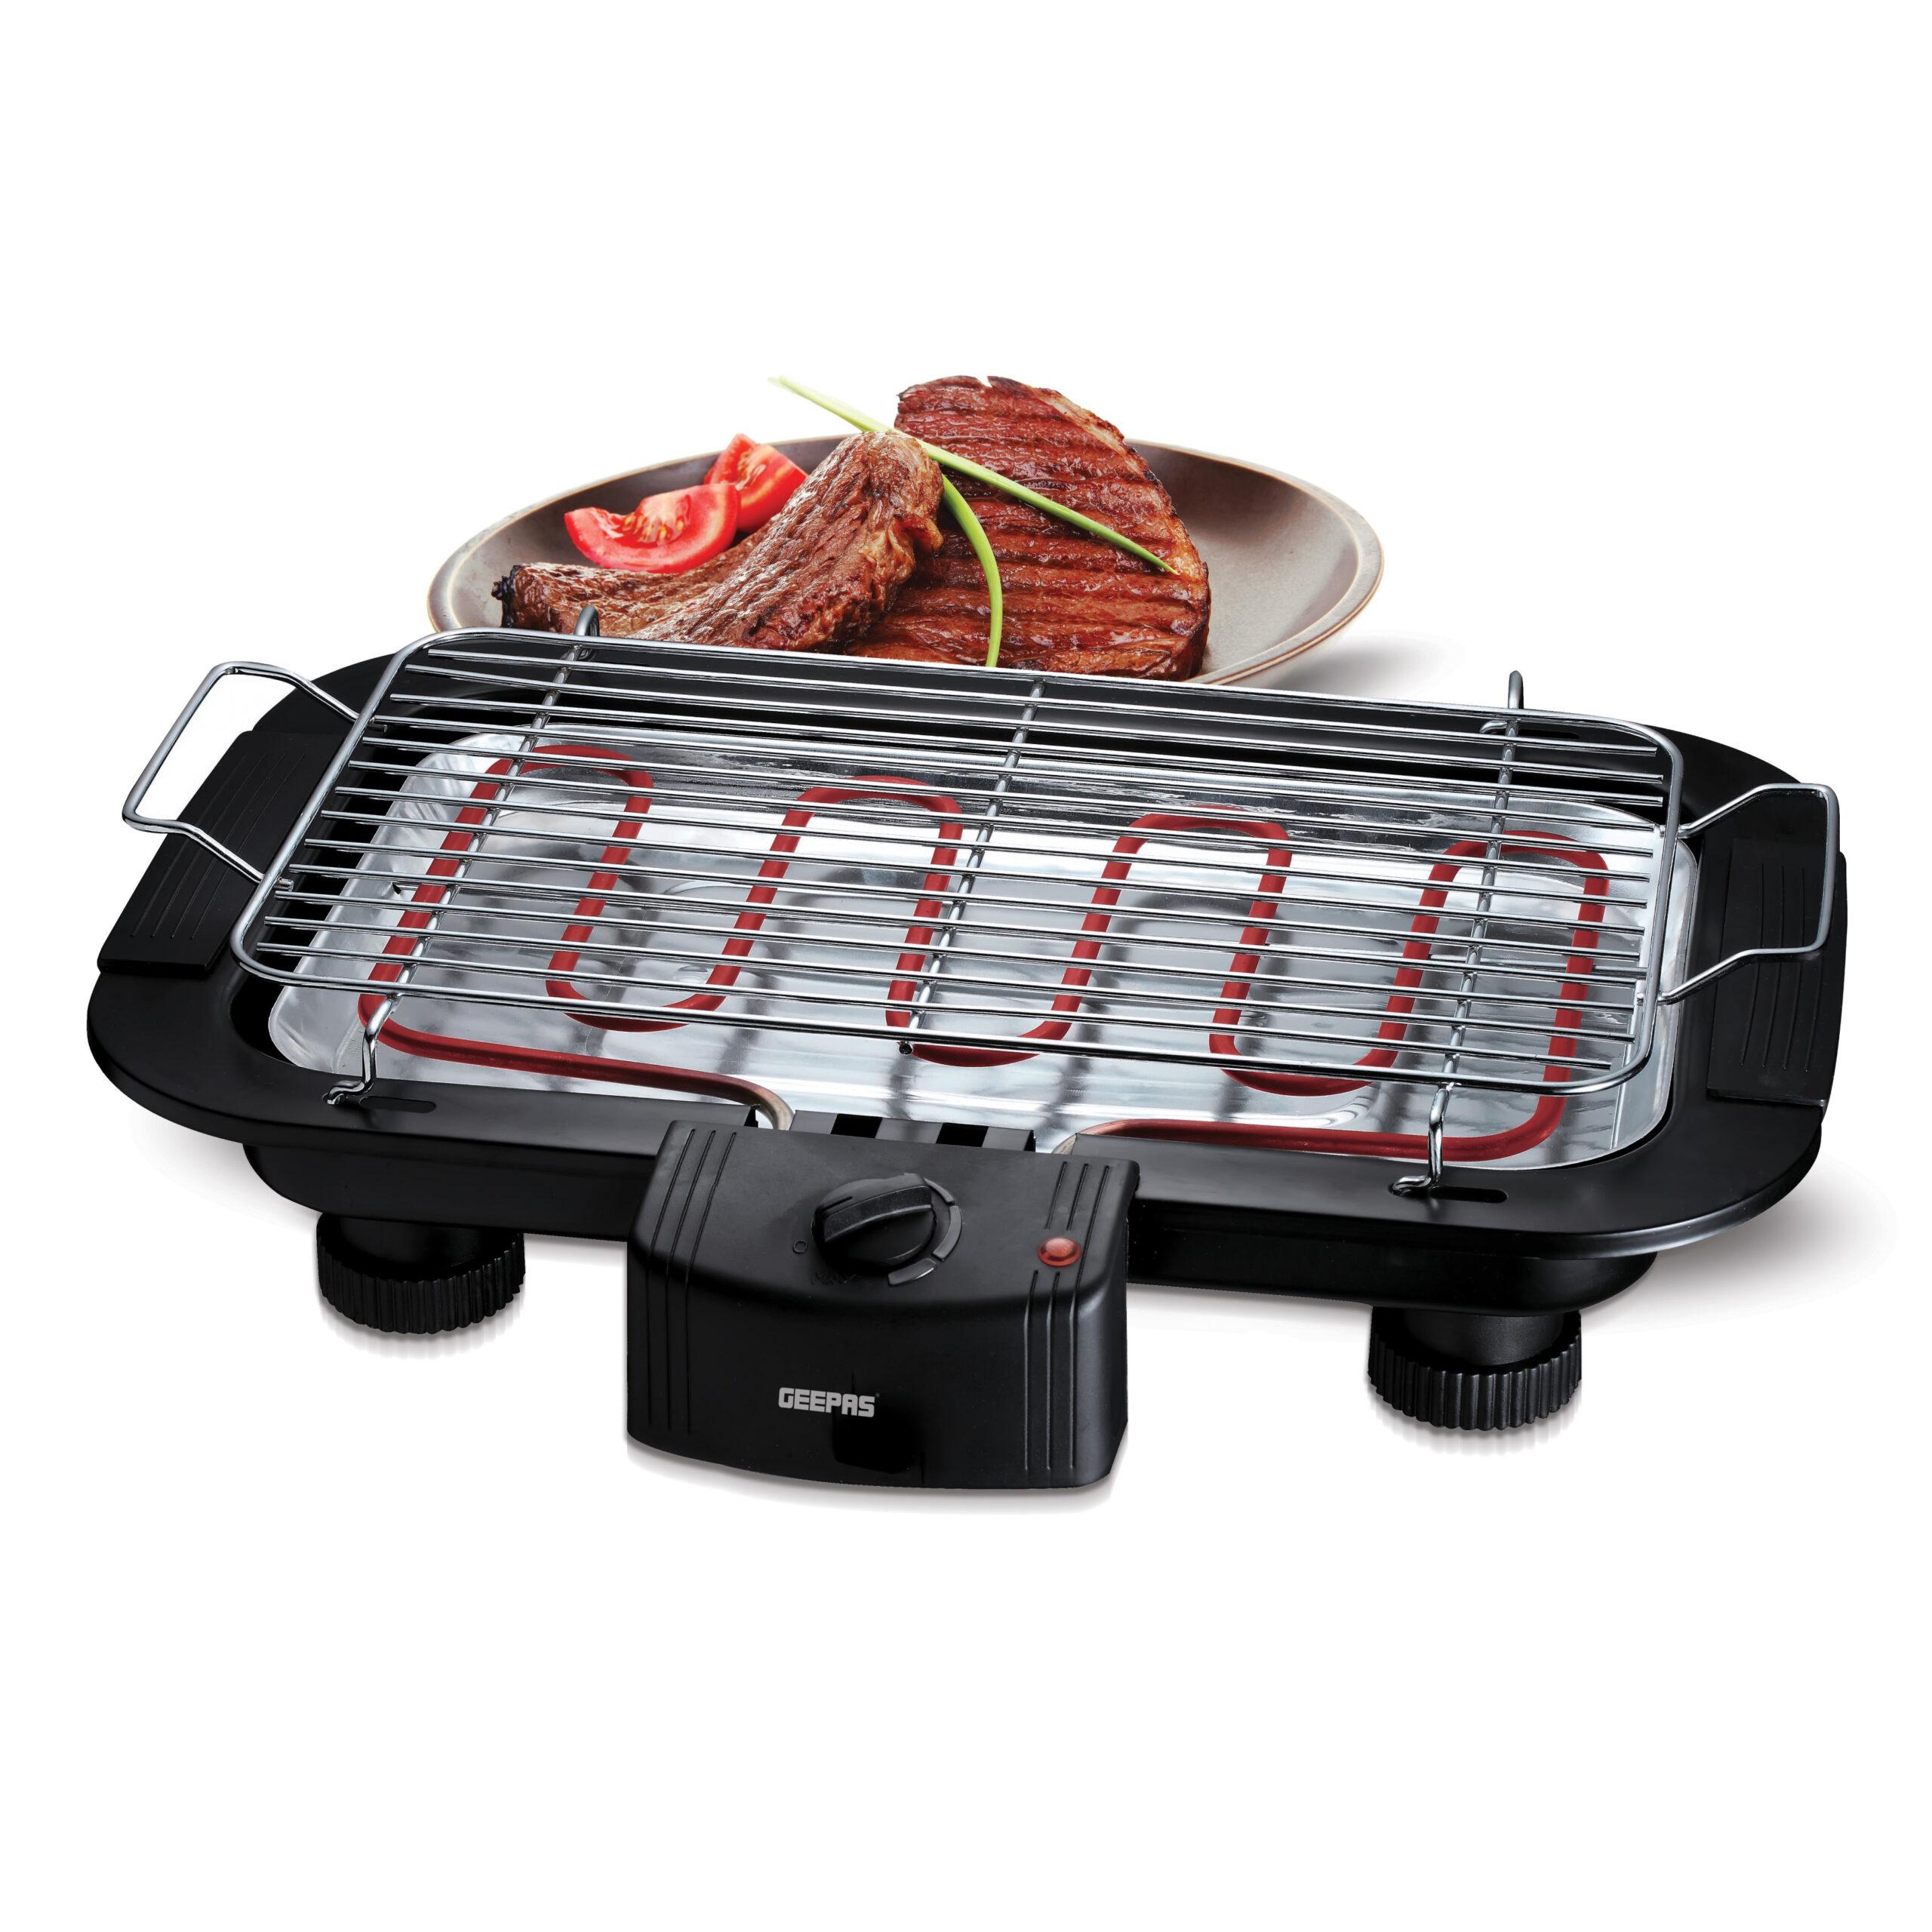 شواية كهربائية 2000 واط حماية من الحرارة الزائدة جيباس Geepas 2000 W Control With Overheat Protection   Electric Barbecue